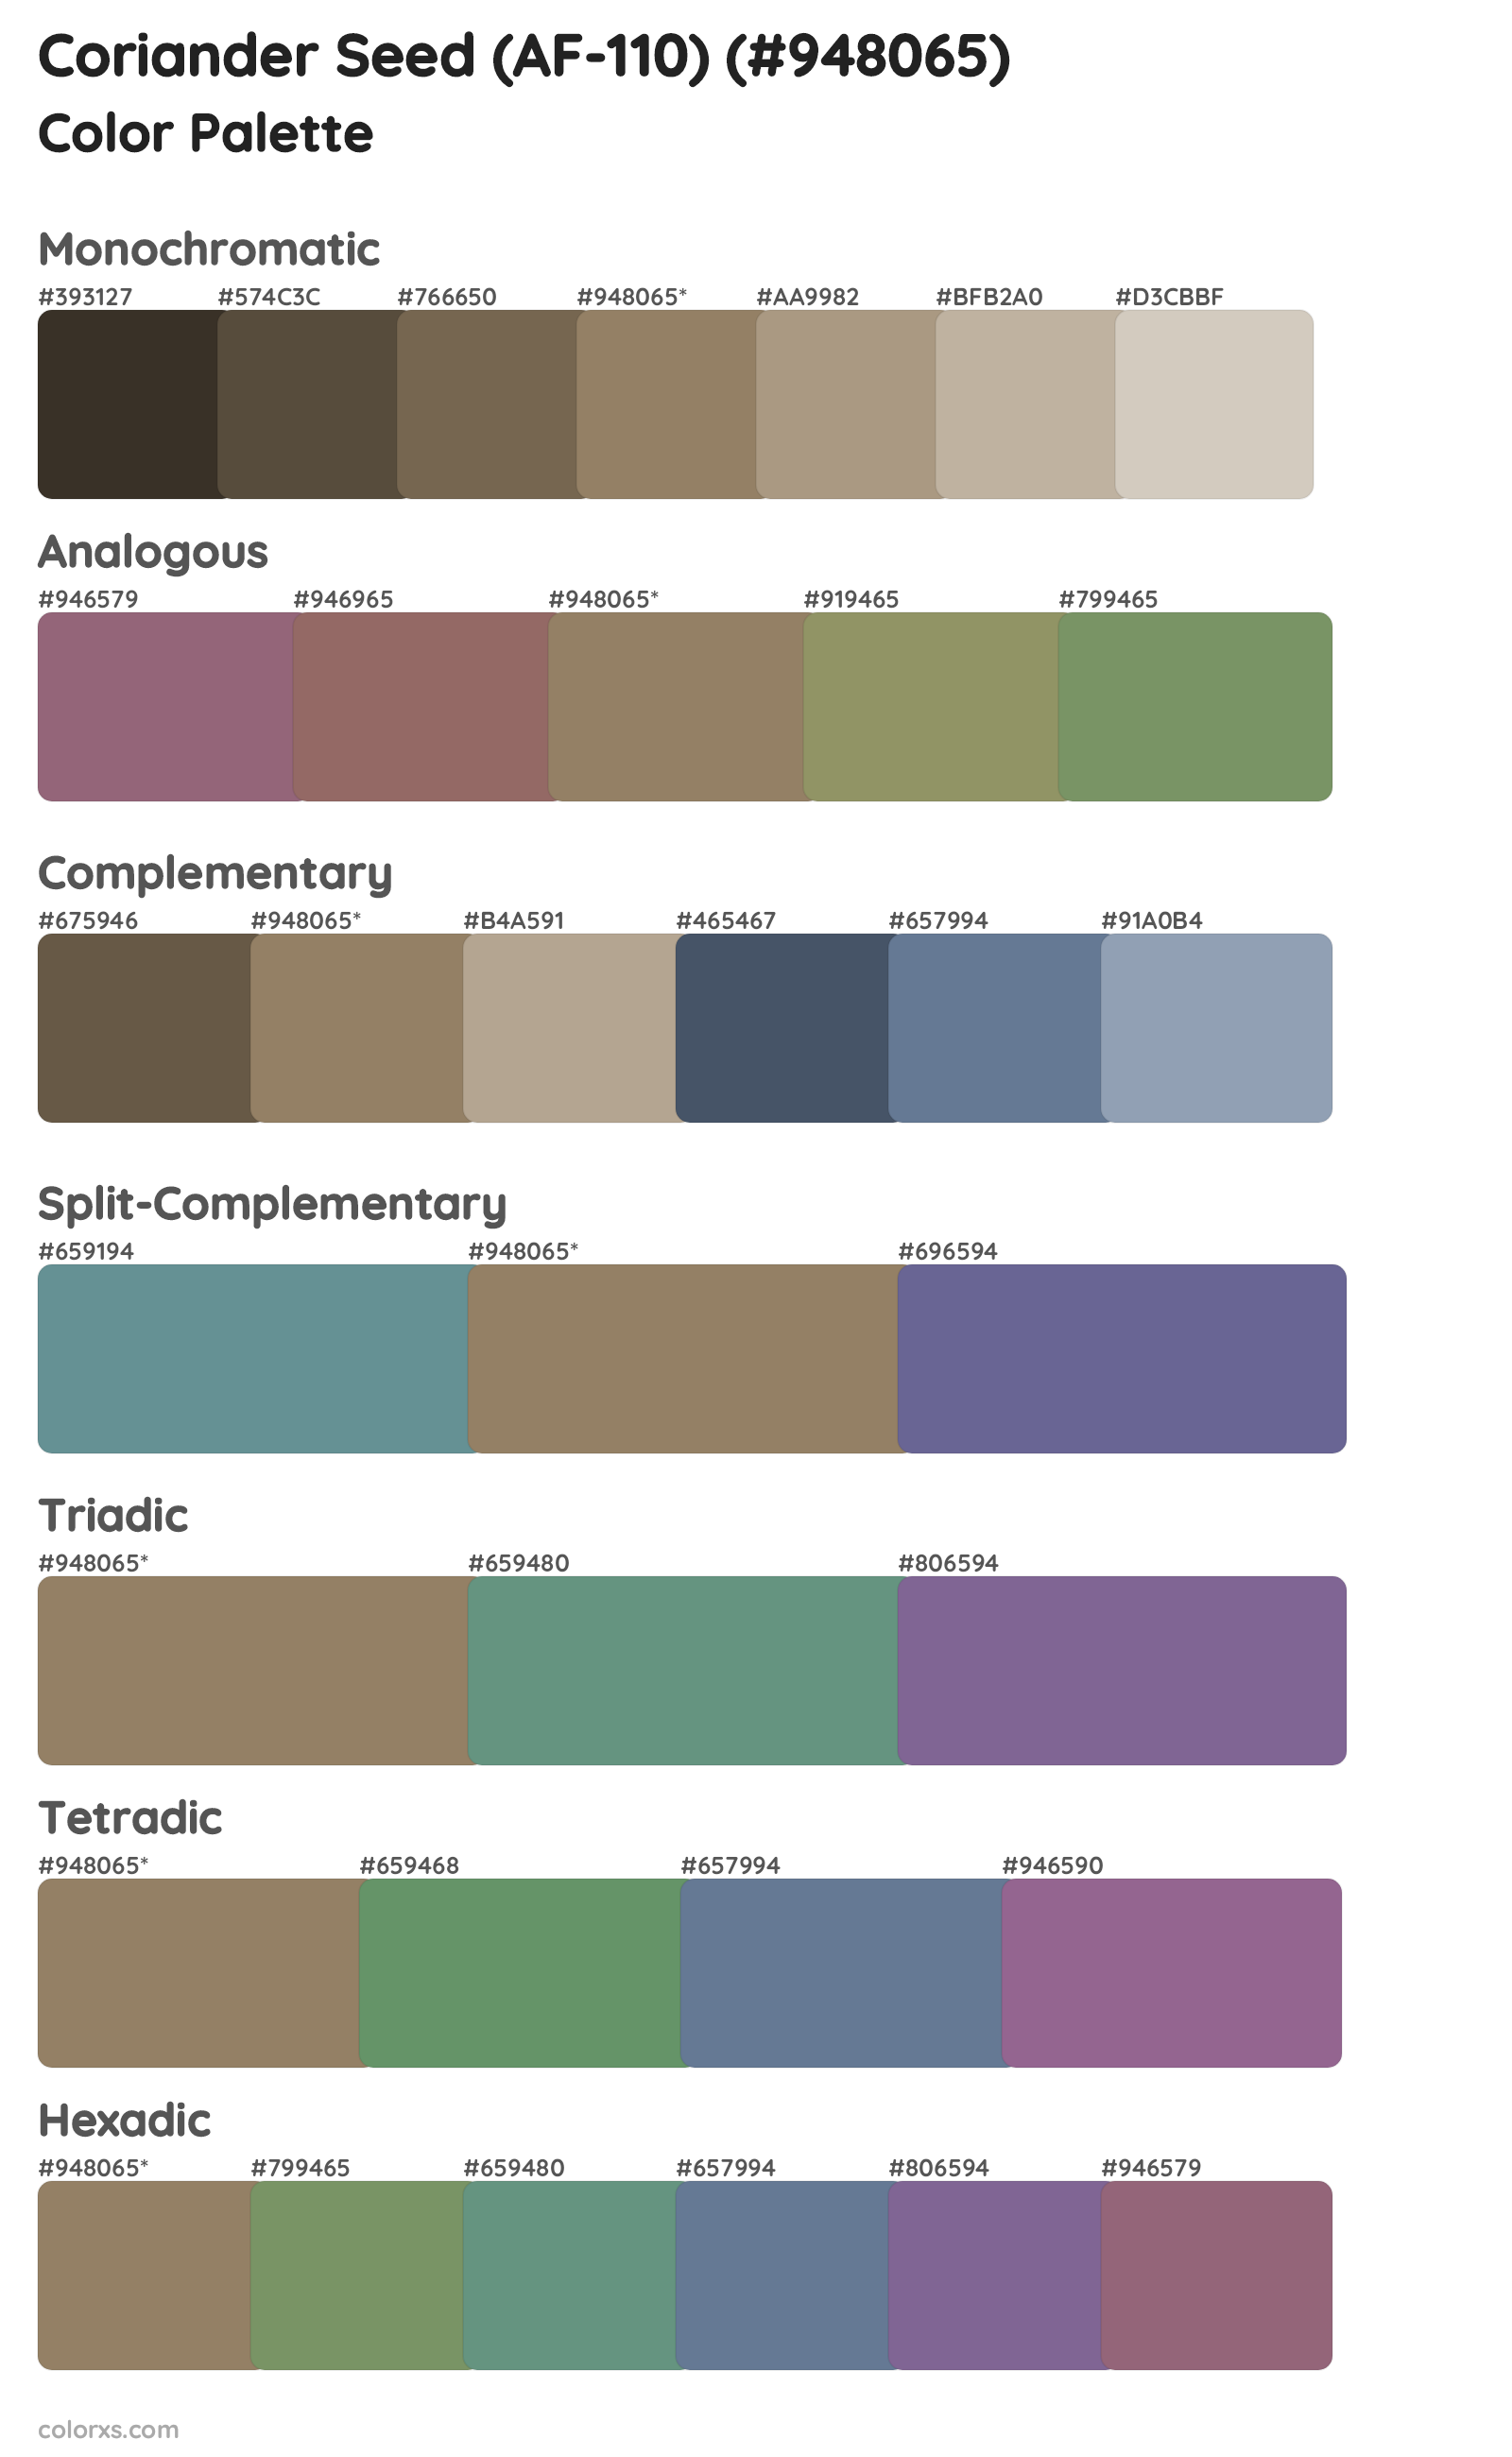 Coriander Seed (AF-110) Color Scheme Palettes